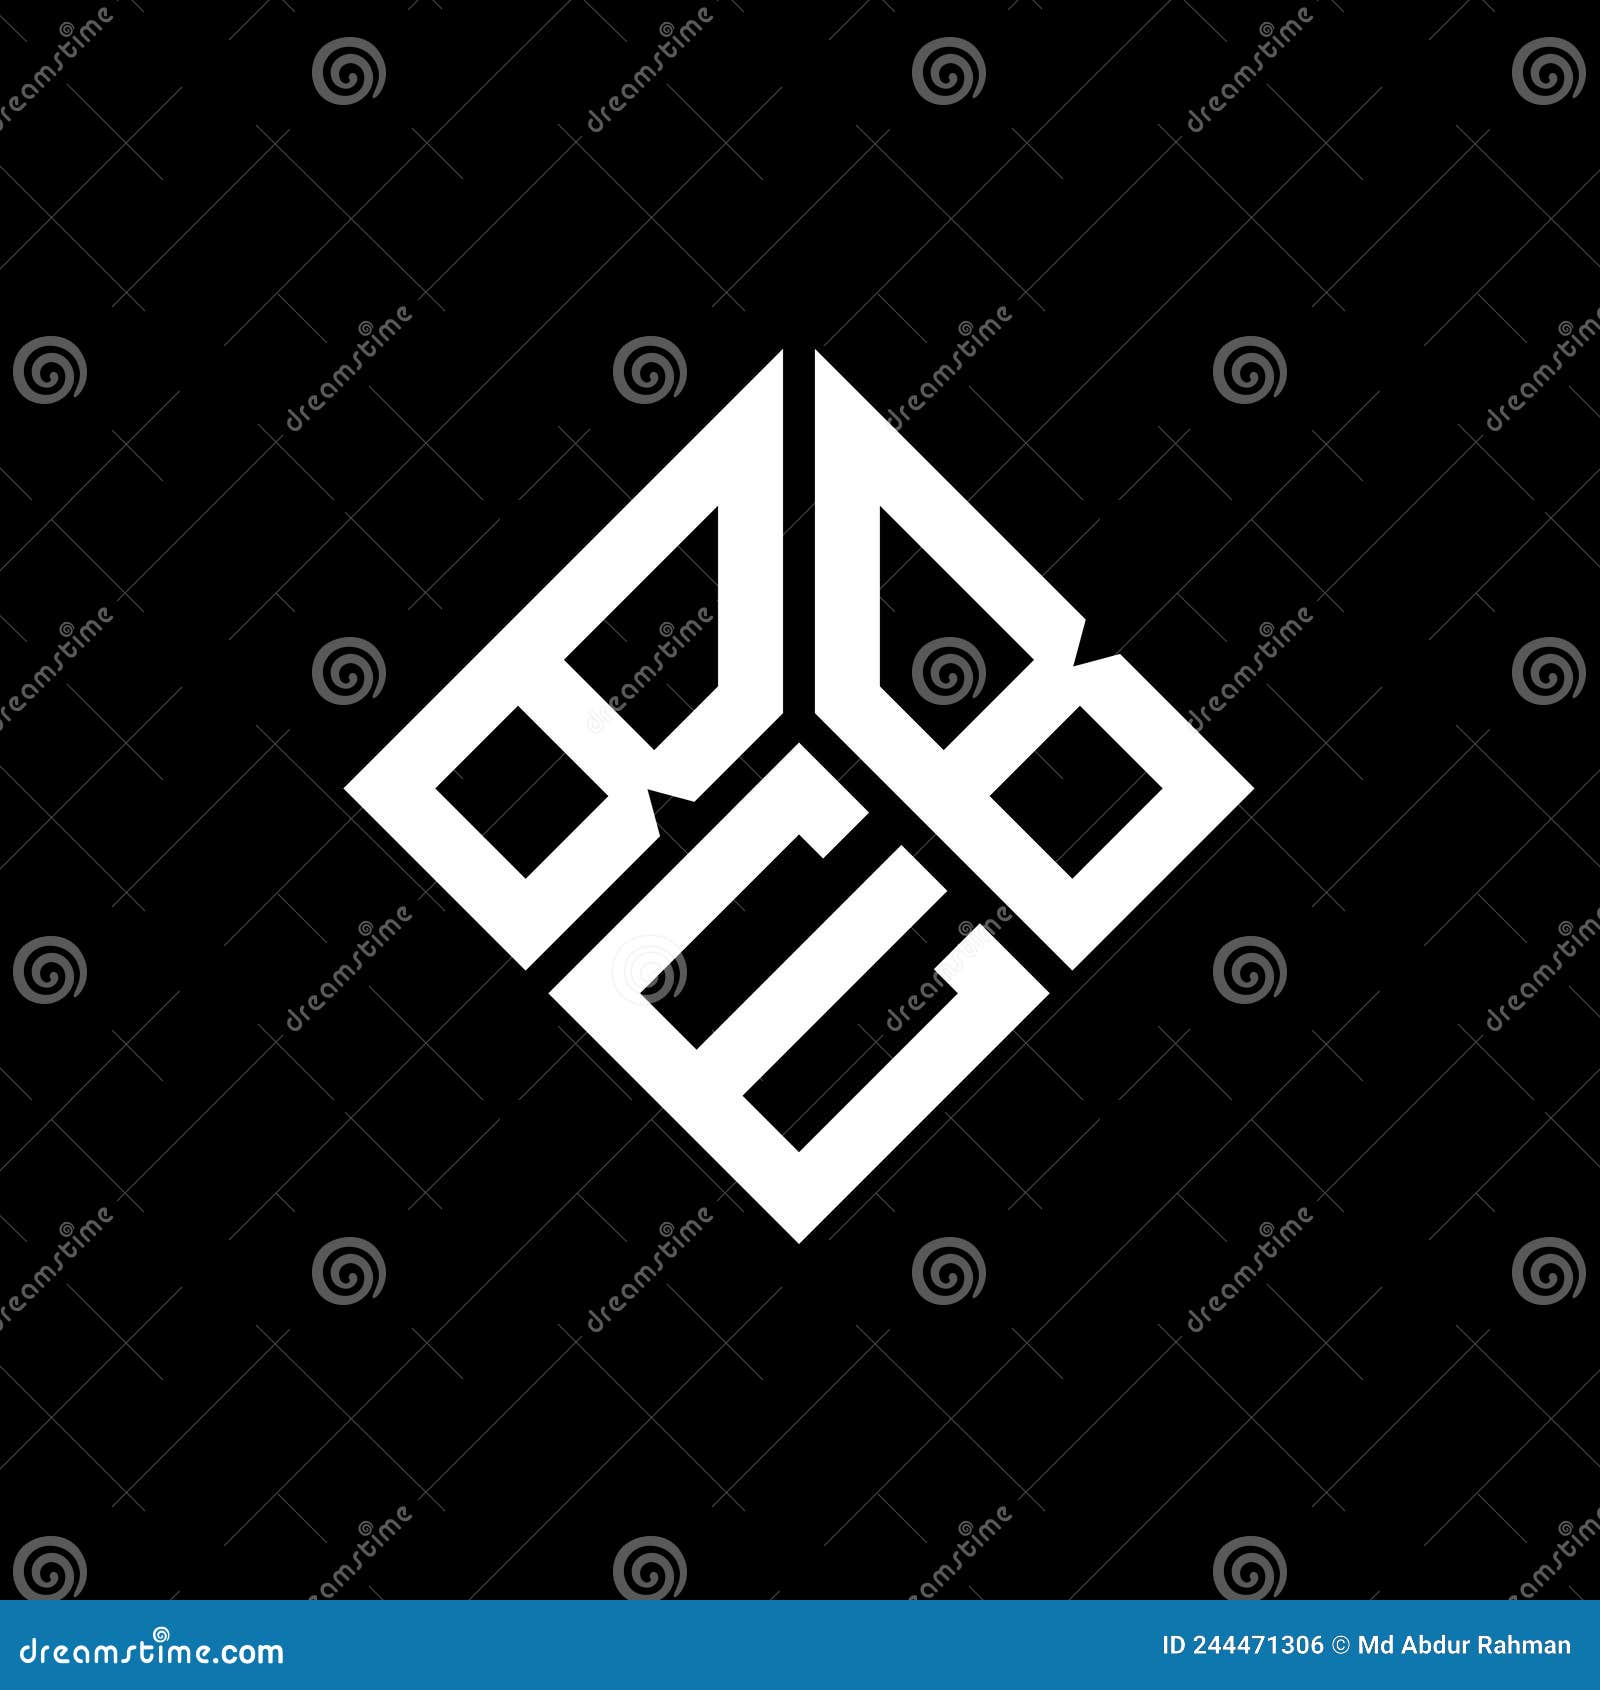 beb letter logo  on black background. beb creative initials letter logo concept. beb letter 